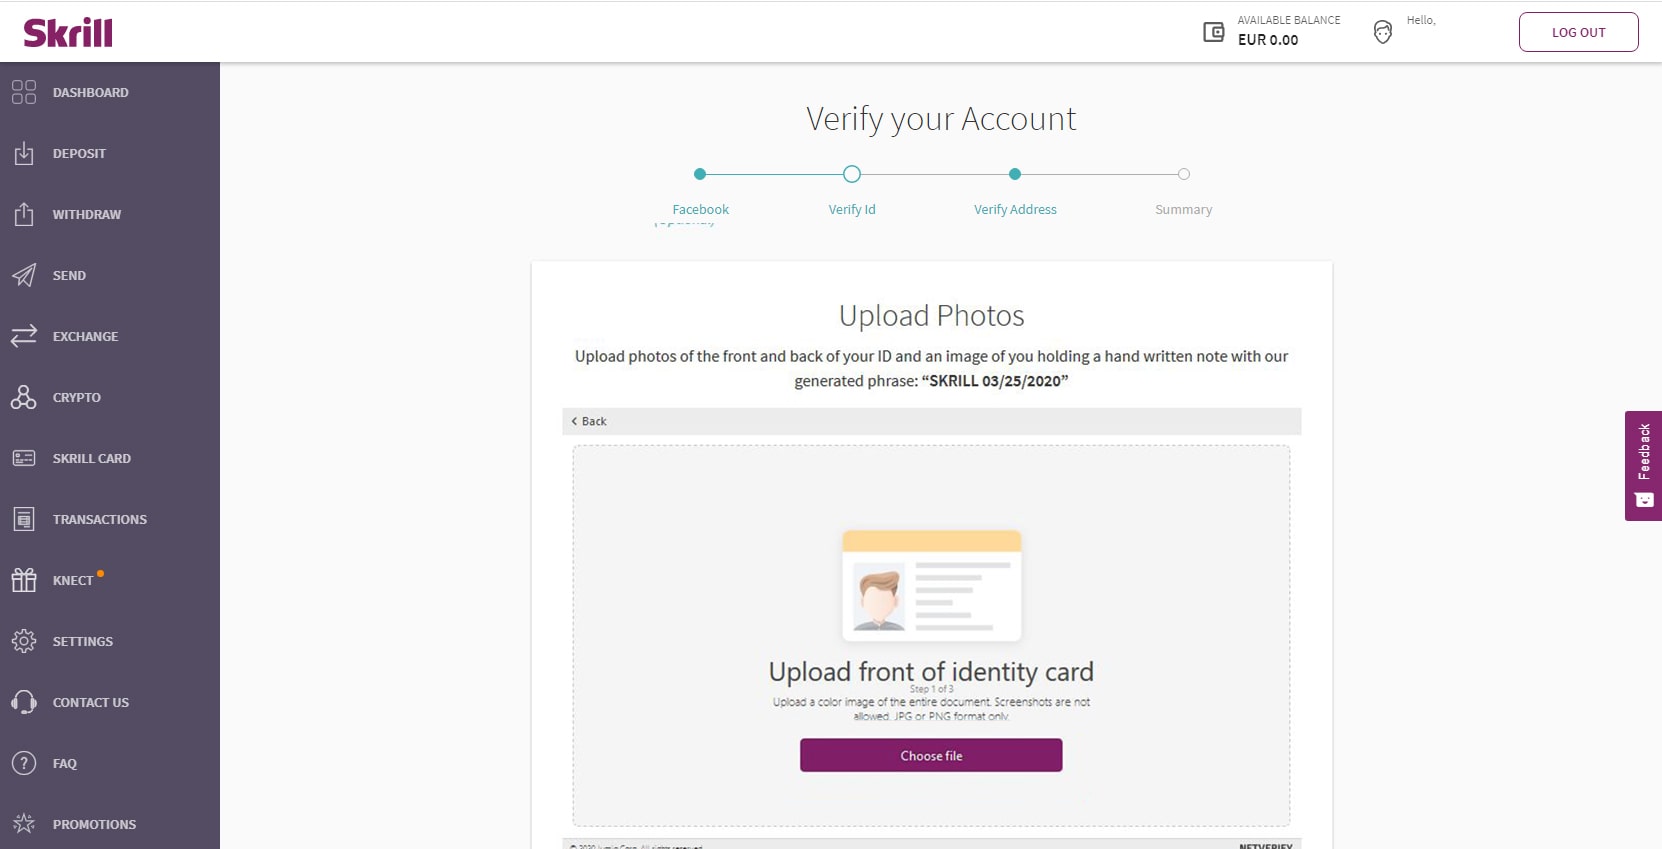 Skrill verification upload front ID 